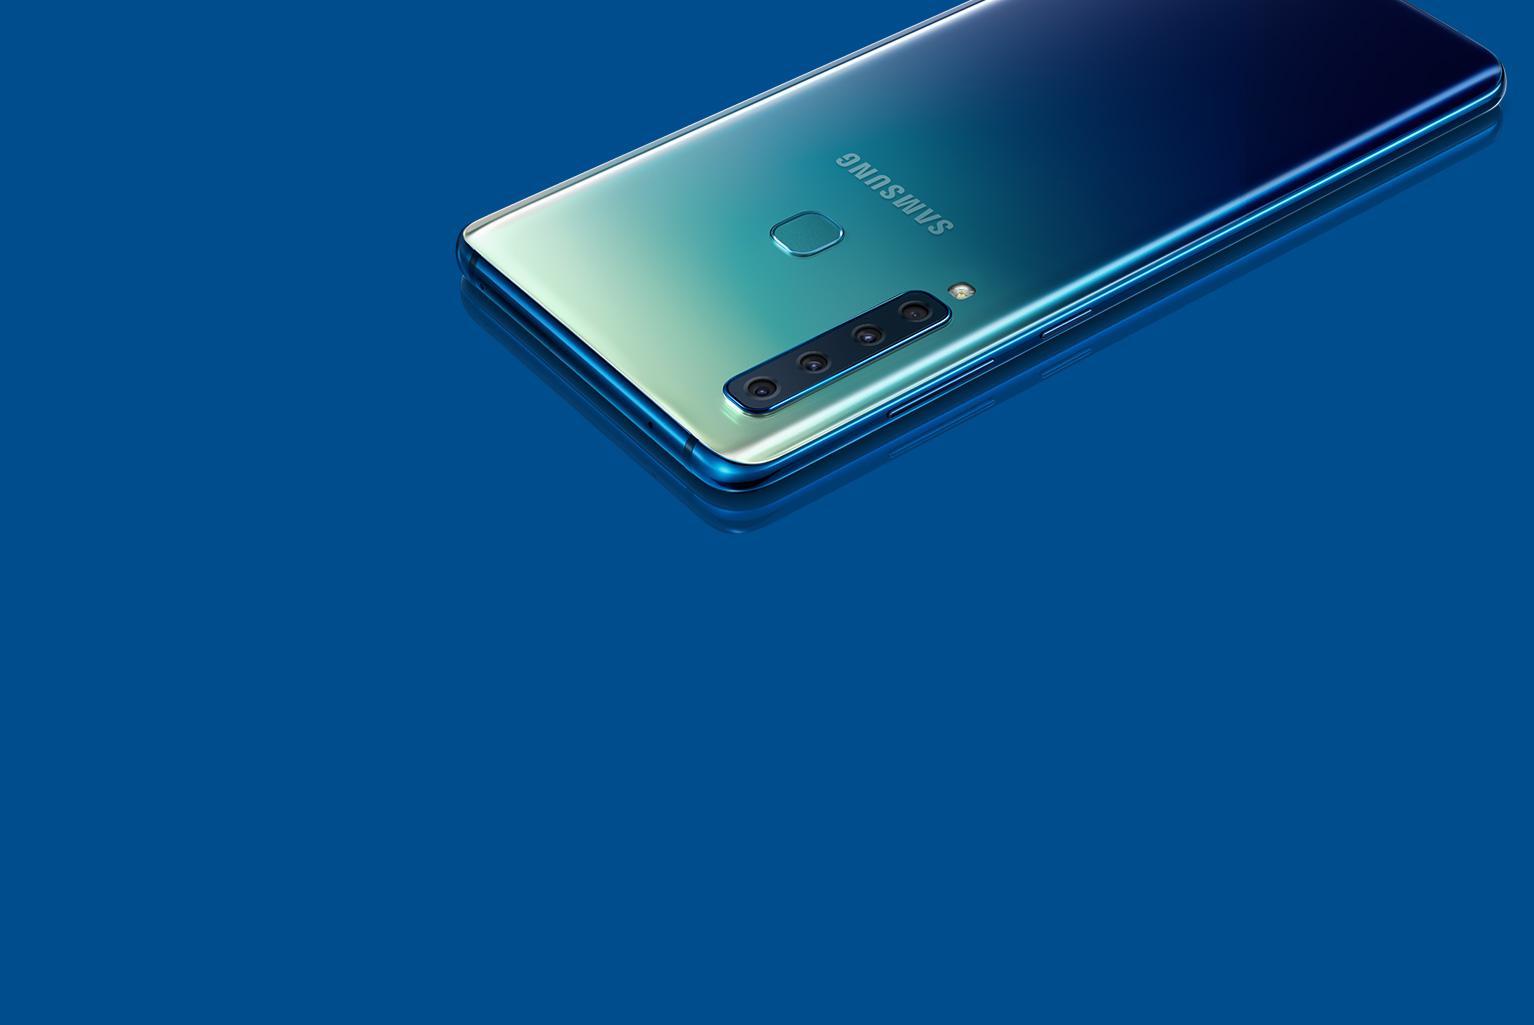 Samsung Galaxy A9 को फरवरी 2020  सुरक्षा पैच जारी किया गया